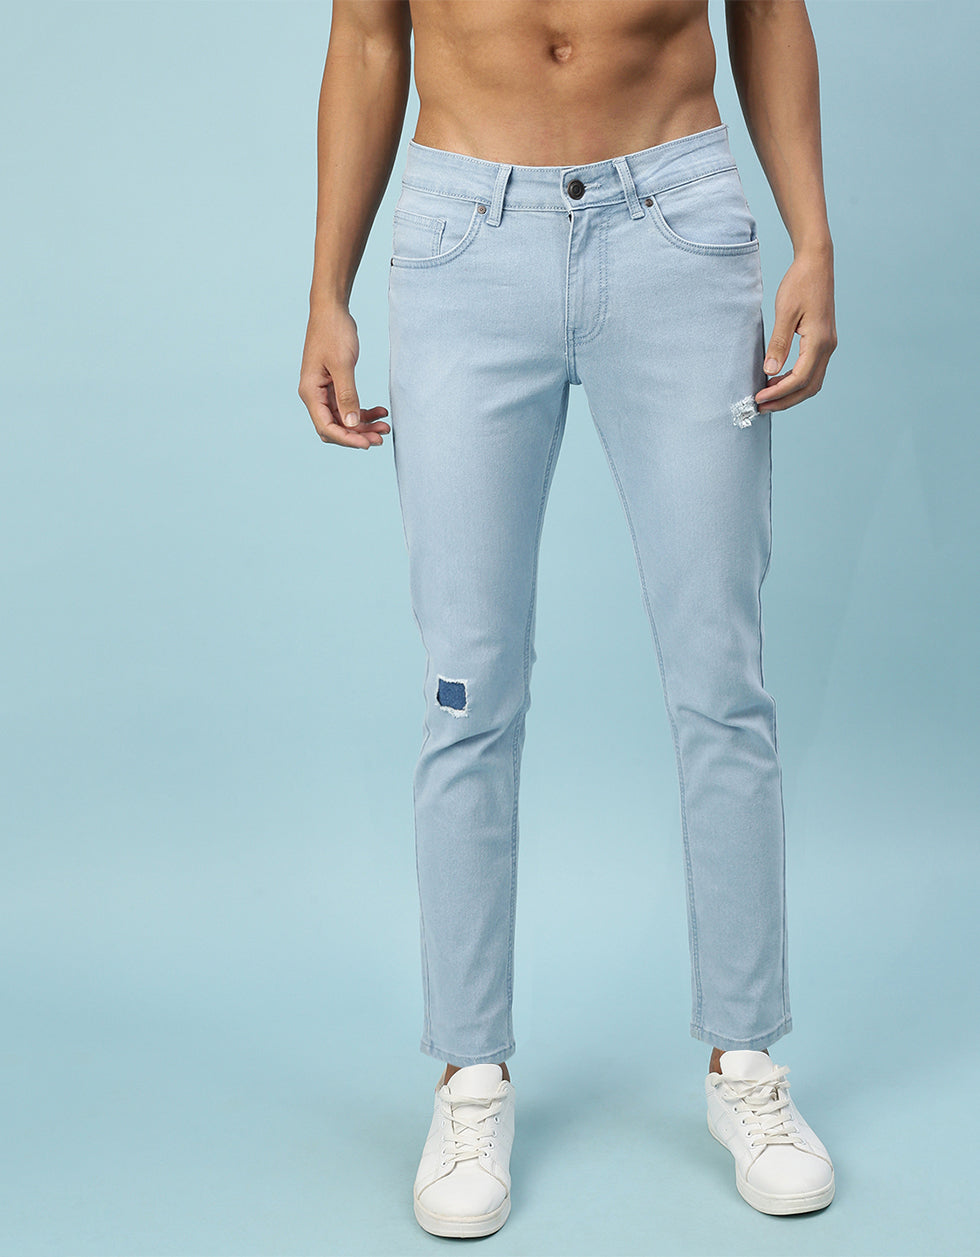 Men's Jeans | Just Jeans